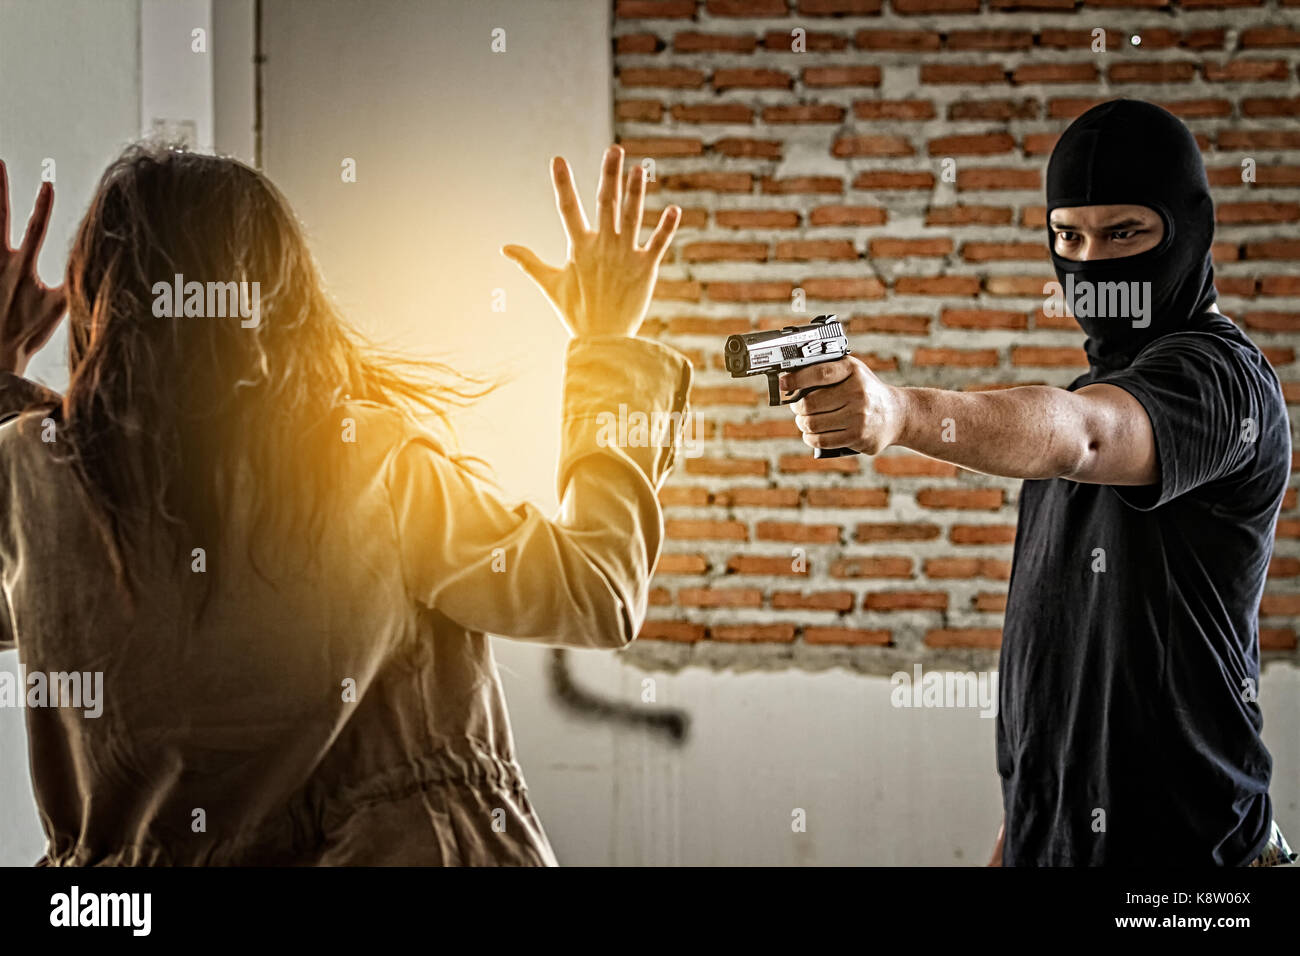 Femme enlevée par des criminels qui menacent son par arme à feu. Banque D'Images